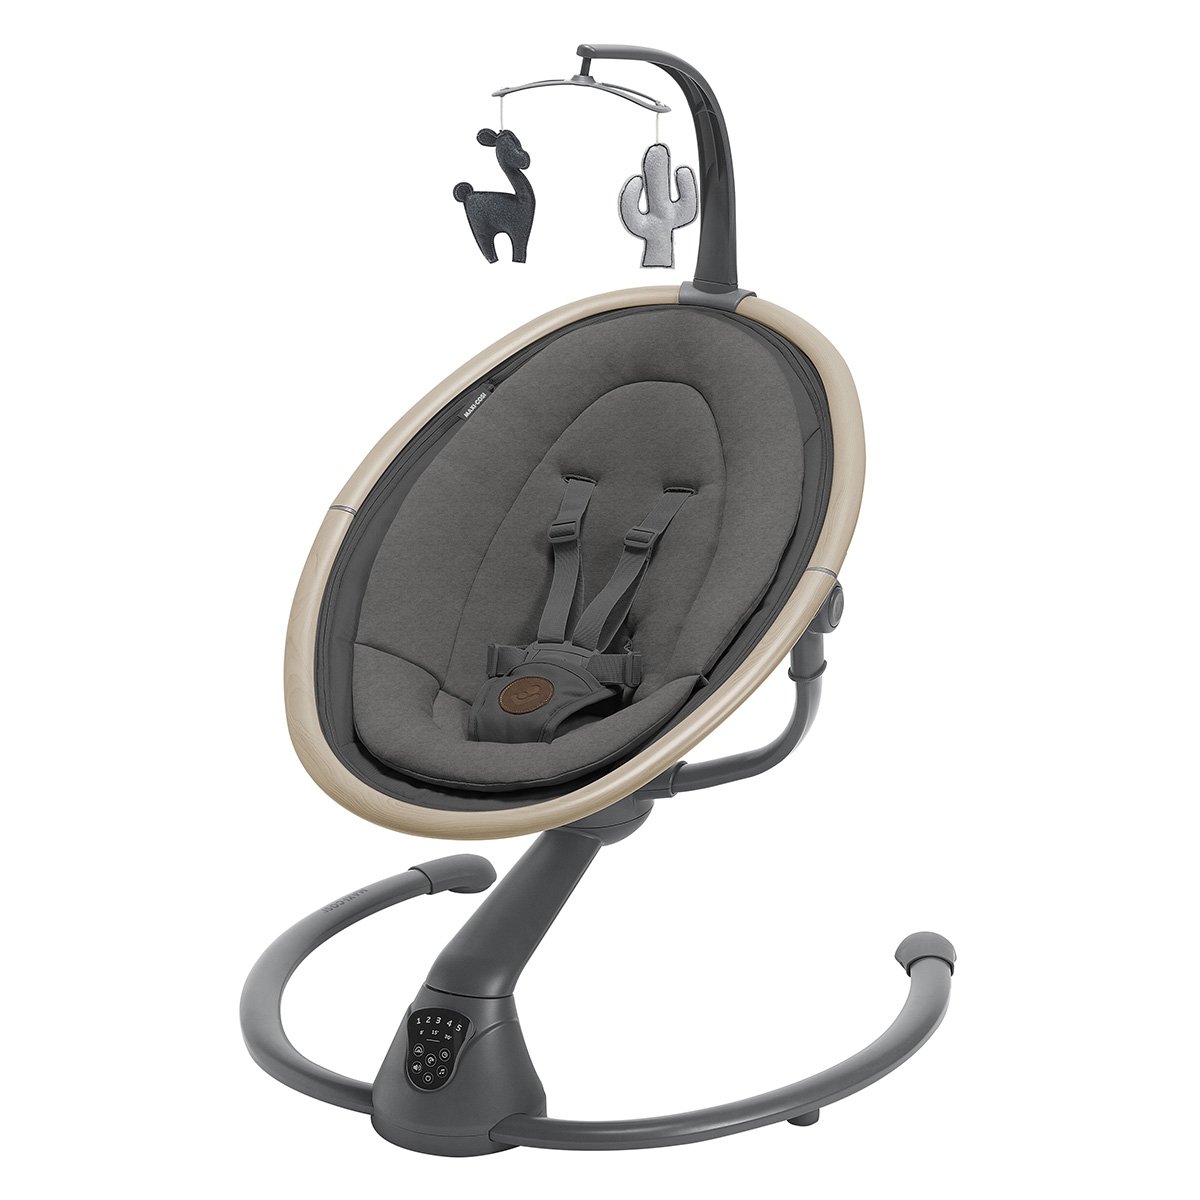 Transat électrique Balancelle bébé Chaise Haute 5 Vitesses